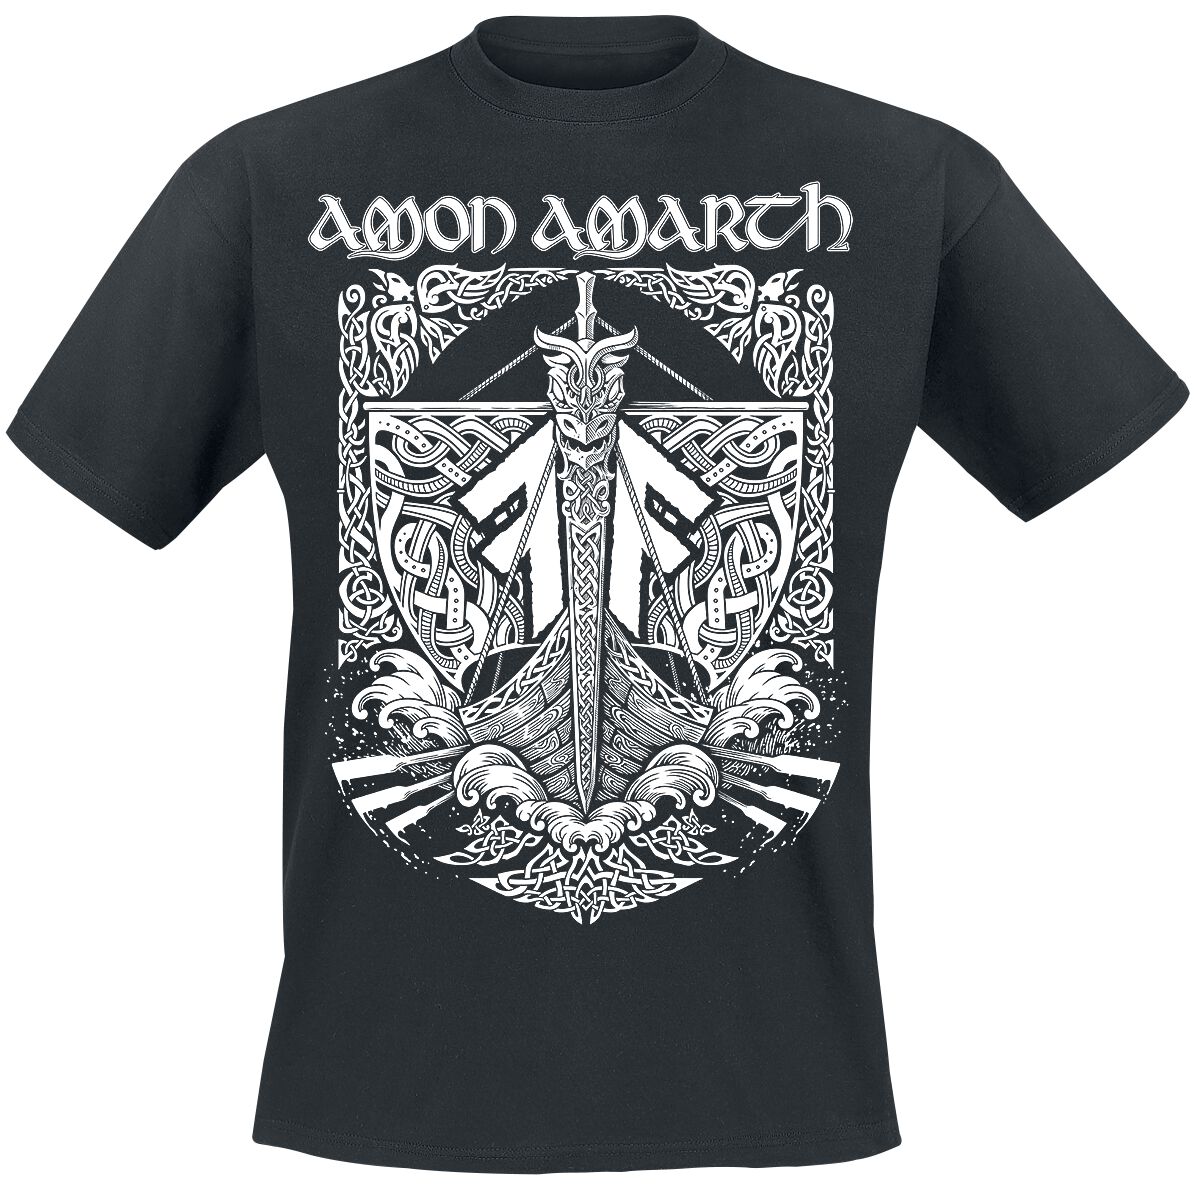 Amon Amarth T-Shirt - Put your back into the oar - S bis 3XL - für Männer - Größe L - schwarz  - Lizenziertes Merchandise!